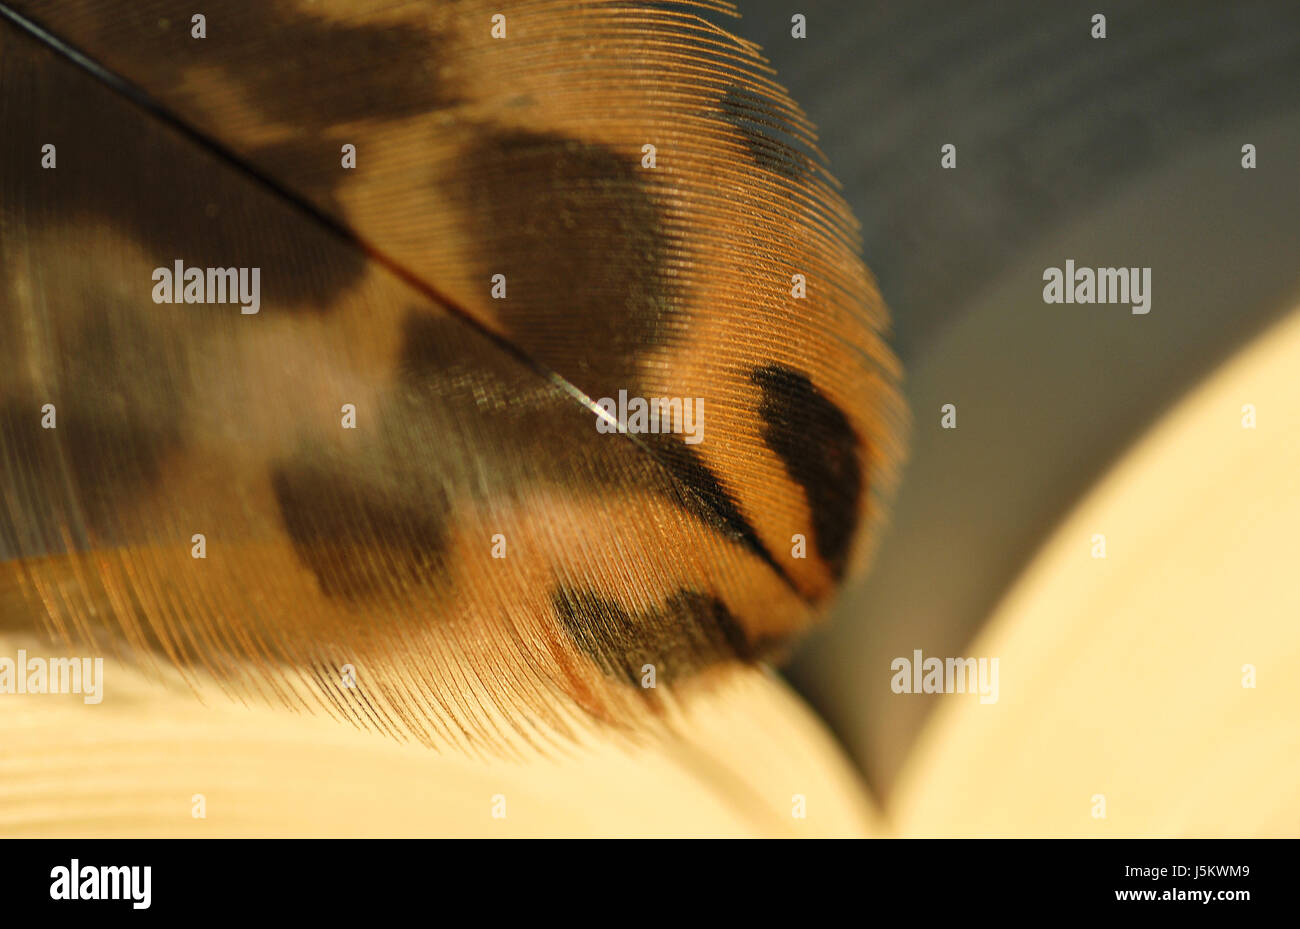 Animal marrón parduzco morena de aves aves aves delicadas ingrávido fácil Foto de stock